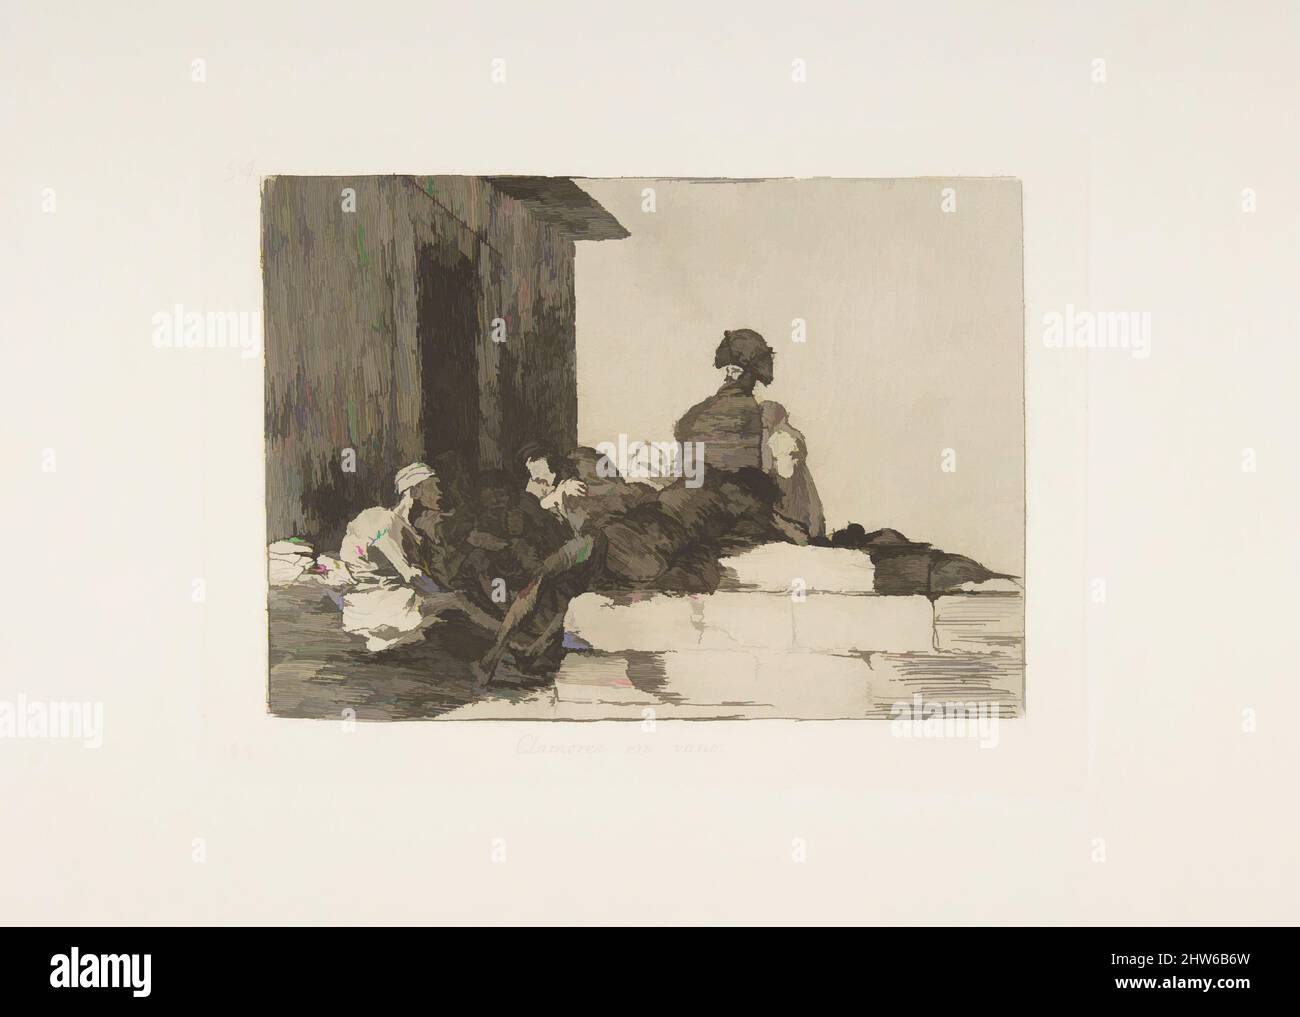 Arte ispirata dal piatto 54 da 'i disastri della guerra' (Los Desastres de la Guerra): 'Appelli sono invano' (Clamores en vano), 1811–12 (pubblicato nel 1863), incisione, lavis, burin, E lucidatrice, piastra: 6 poll. x 8 1/16 poll. (15,2 x 20,5 cm), Prints, Goya (Francisco de Goya y Lucientes) (spagnolo, opere classiche modernizzate da Artotop con un tuffo di modernità. Forme, colore e valore, impatto visivo accattivante sulle emozioni artistiche attraverso la libertà delle opere d'arte in modo contemporaneo. Un messaggio senza tempo che persegue una nuova direzione selvaggiamente creativa. Artisti che si rivolgono al supporto digitale e creano l'NFT Artotop Foto Stock